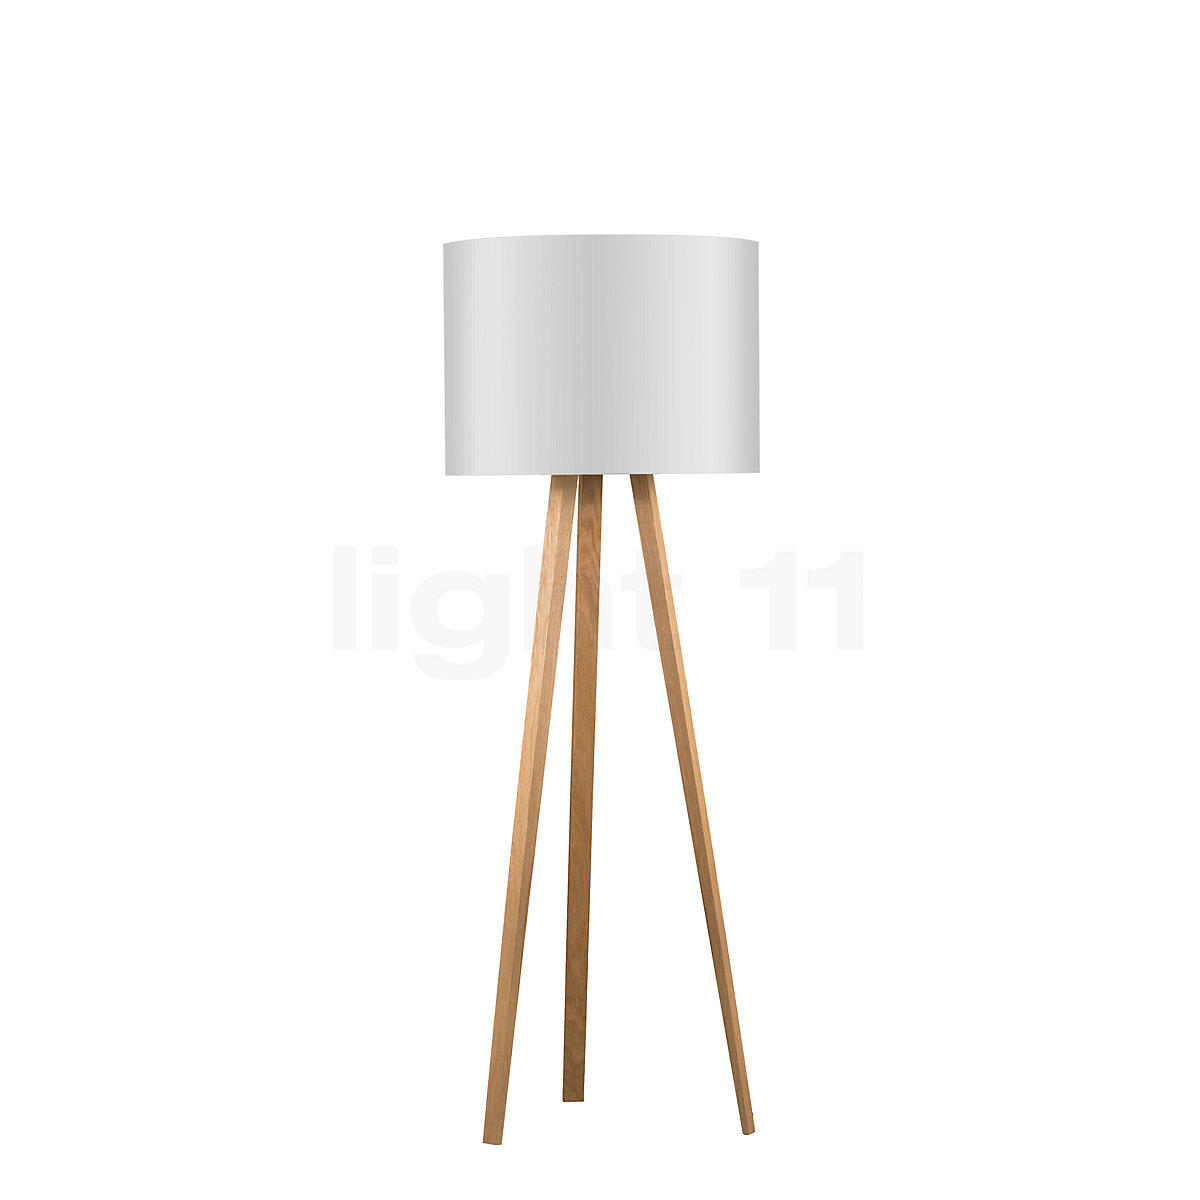 Maigrau Luca Stand Floor Lamp At Light11 Eu, Stand Floor Lamp Light